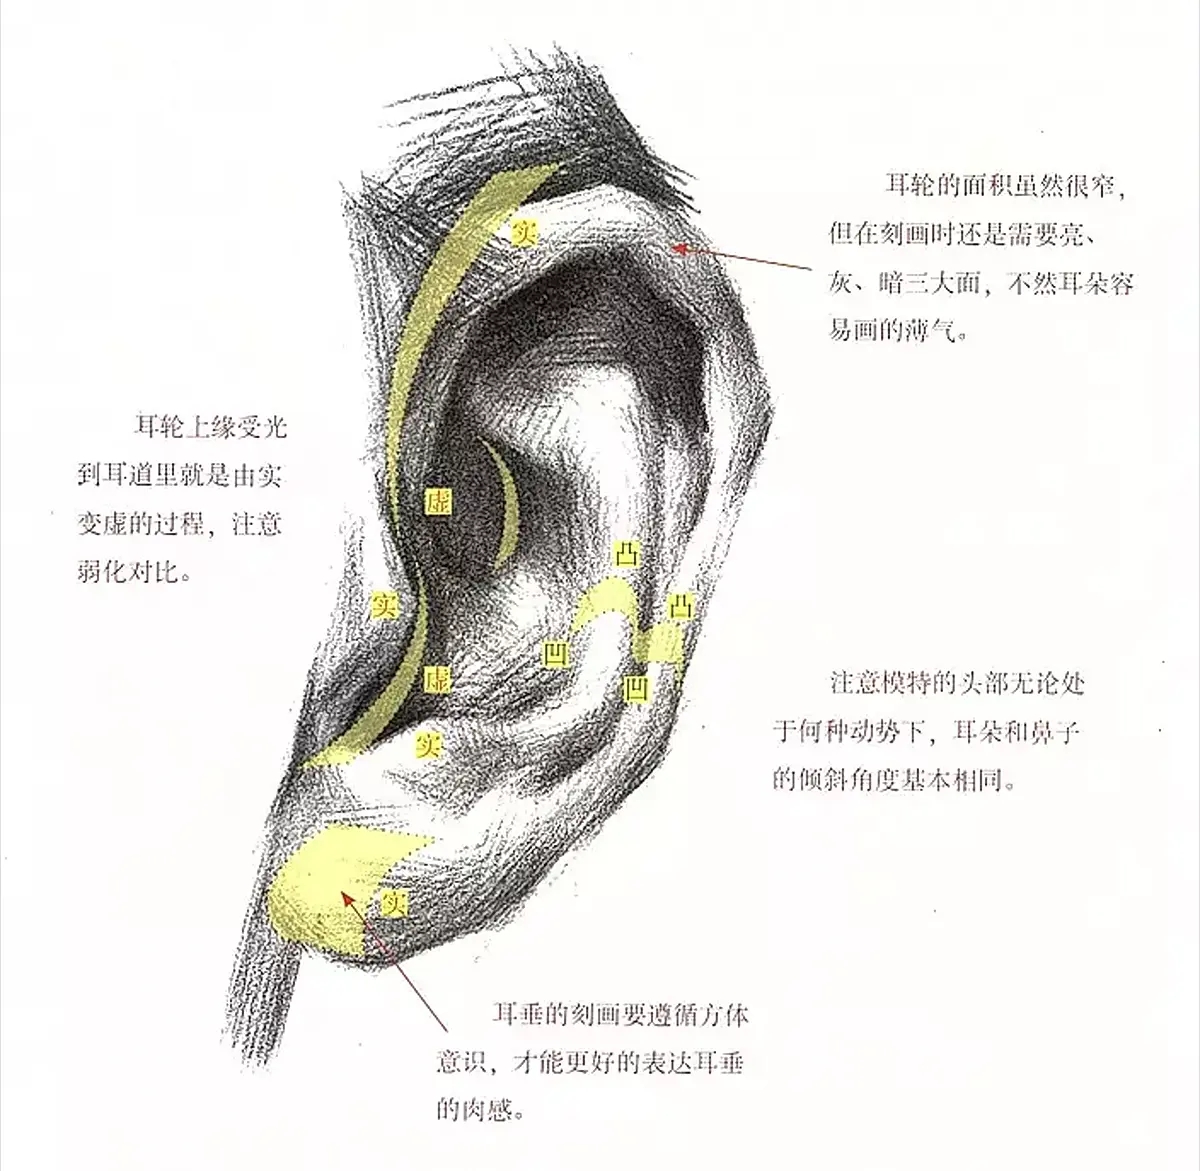 【案例分析】耳再造直埋法术后一年真实反馈，和正常耳朵几乎一样 - 知乎